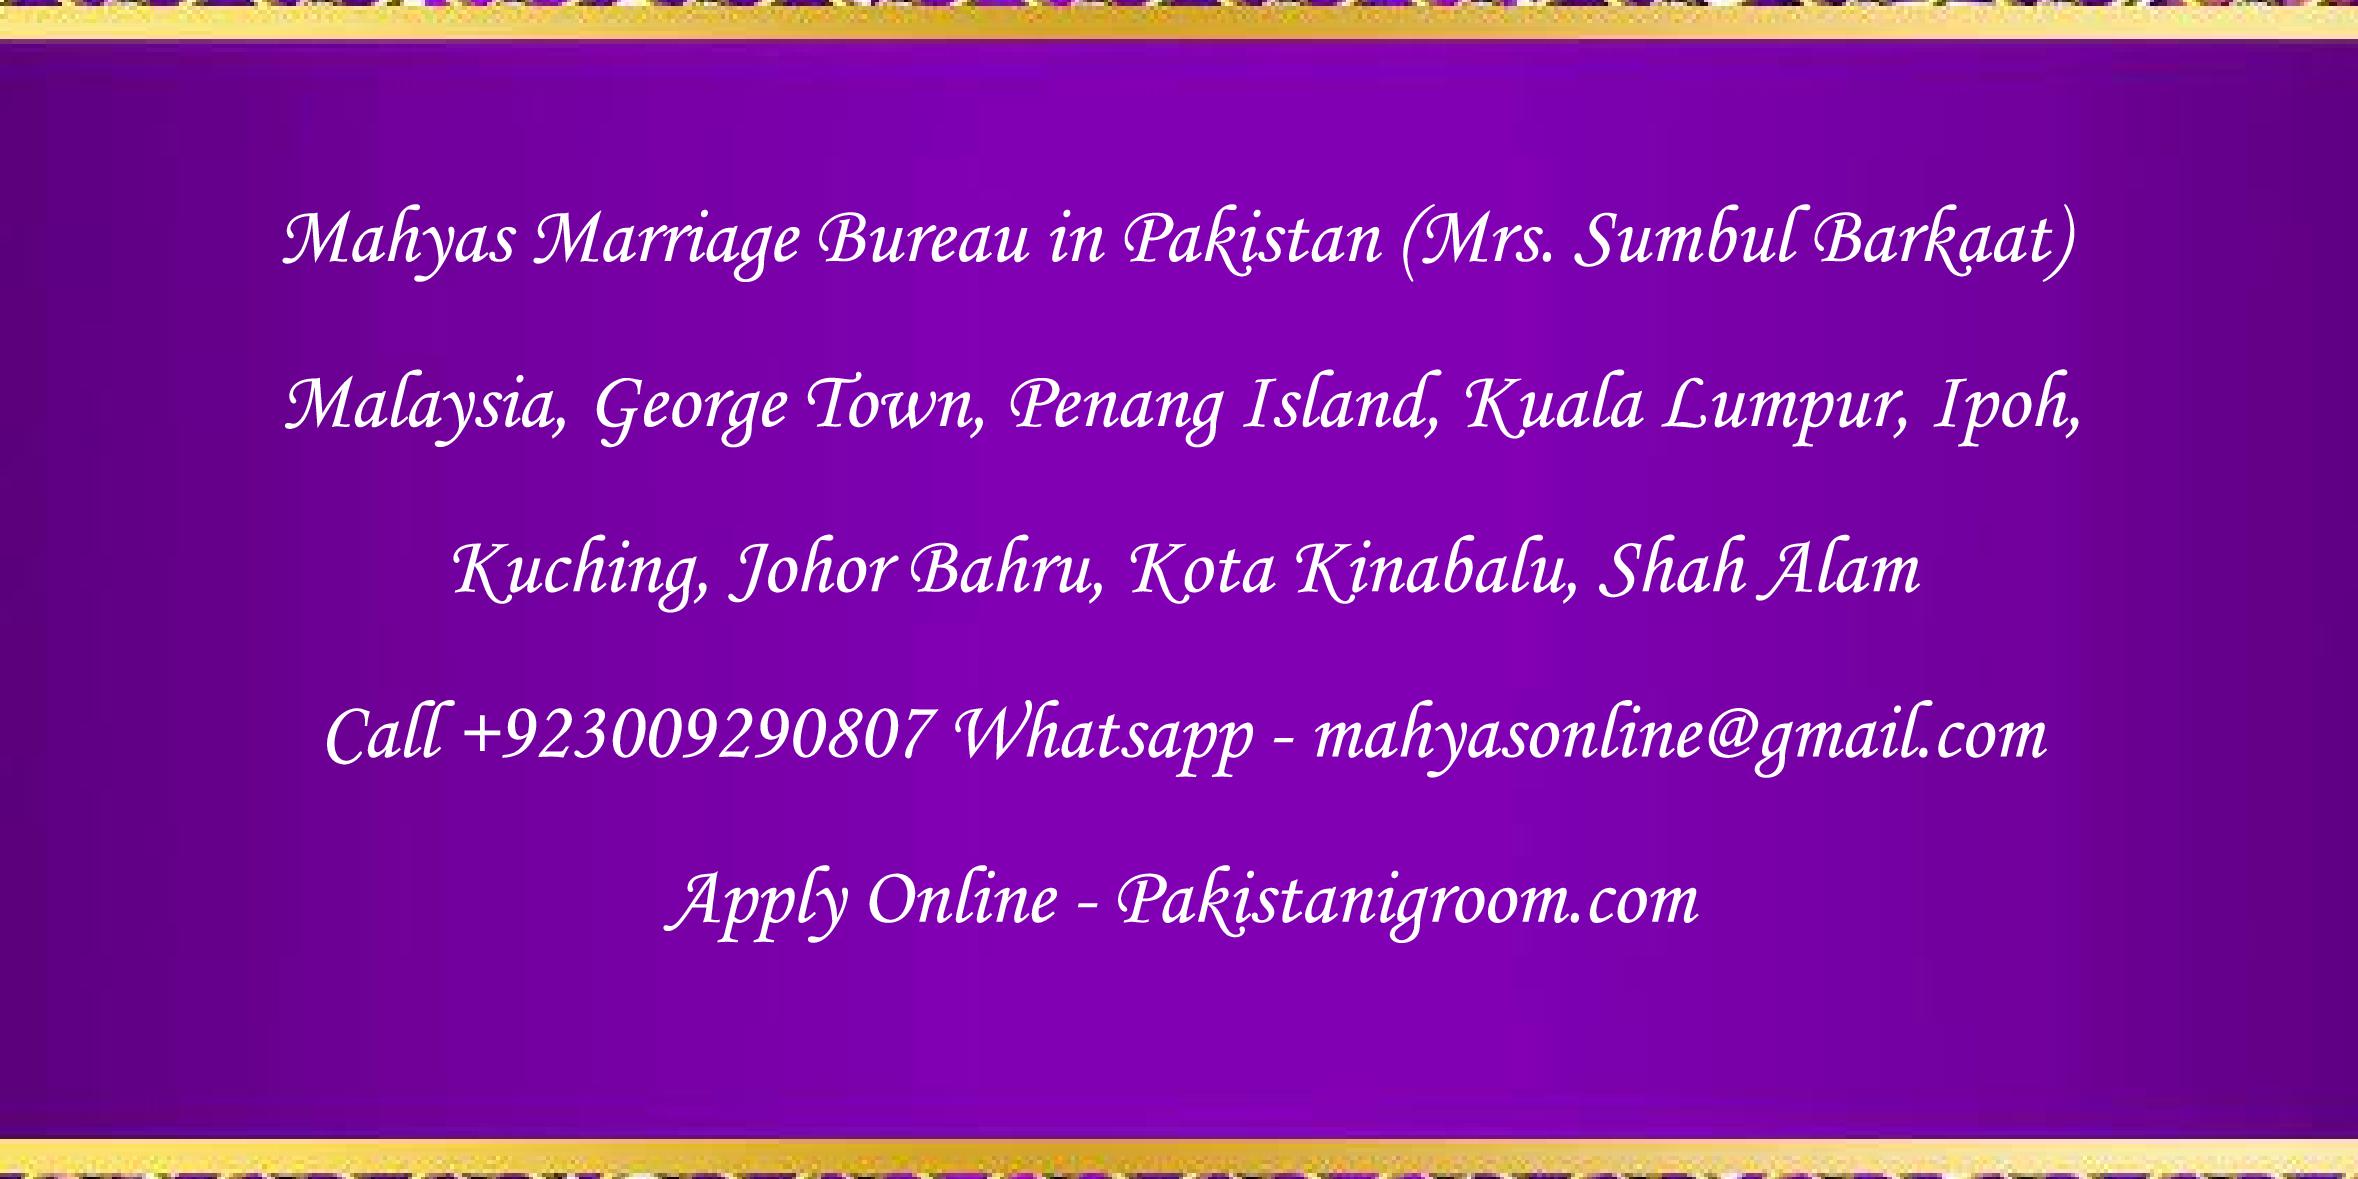 Mahyas-marriage-bureau-Karachi-Pakistan-for-Shia-Sunni-Remarriage-Divorce-Widow-Second-marriage-Punjabi-Pashto-Urdu-31.png